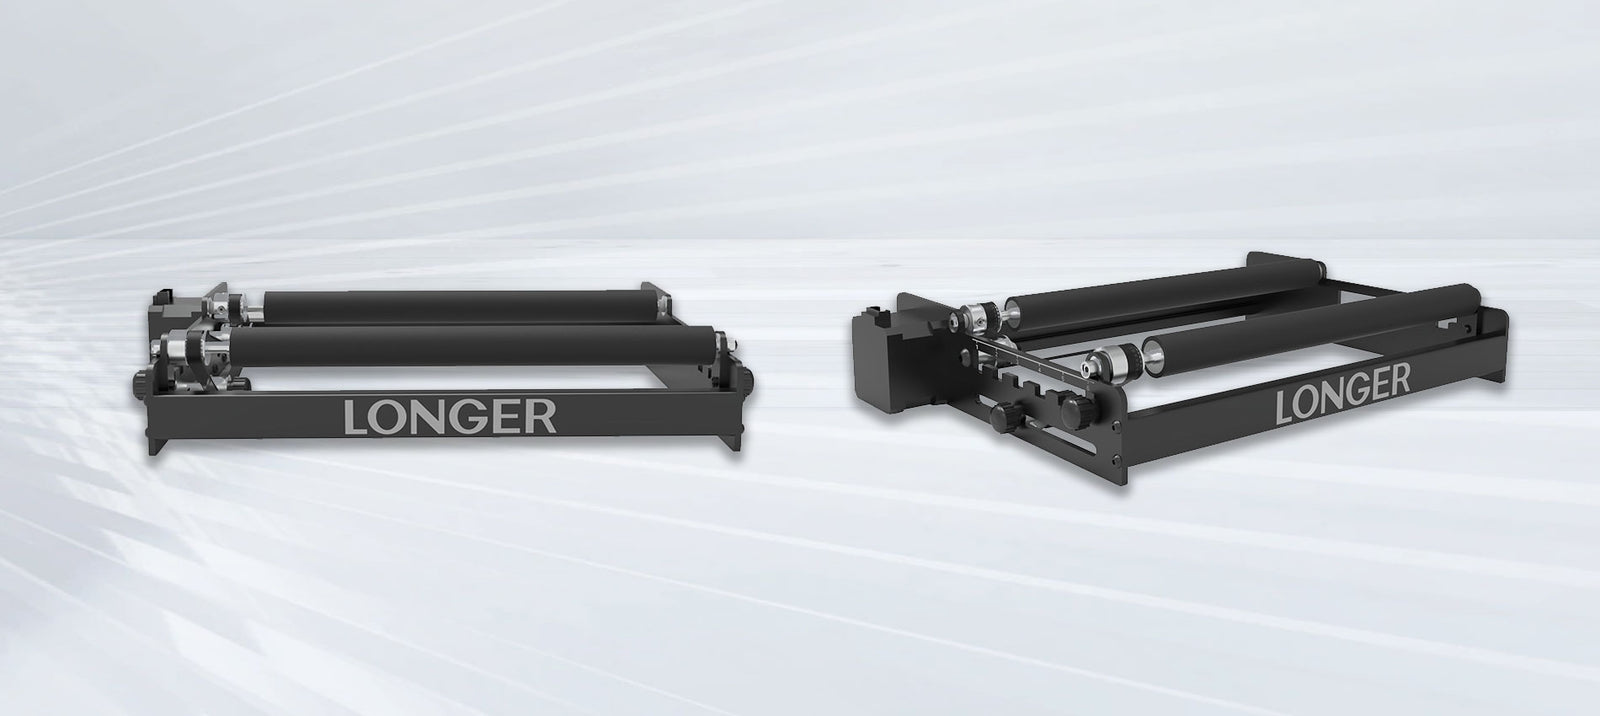 Longer Laser Rotary Roller